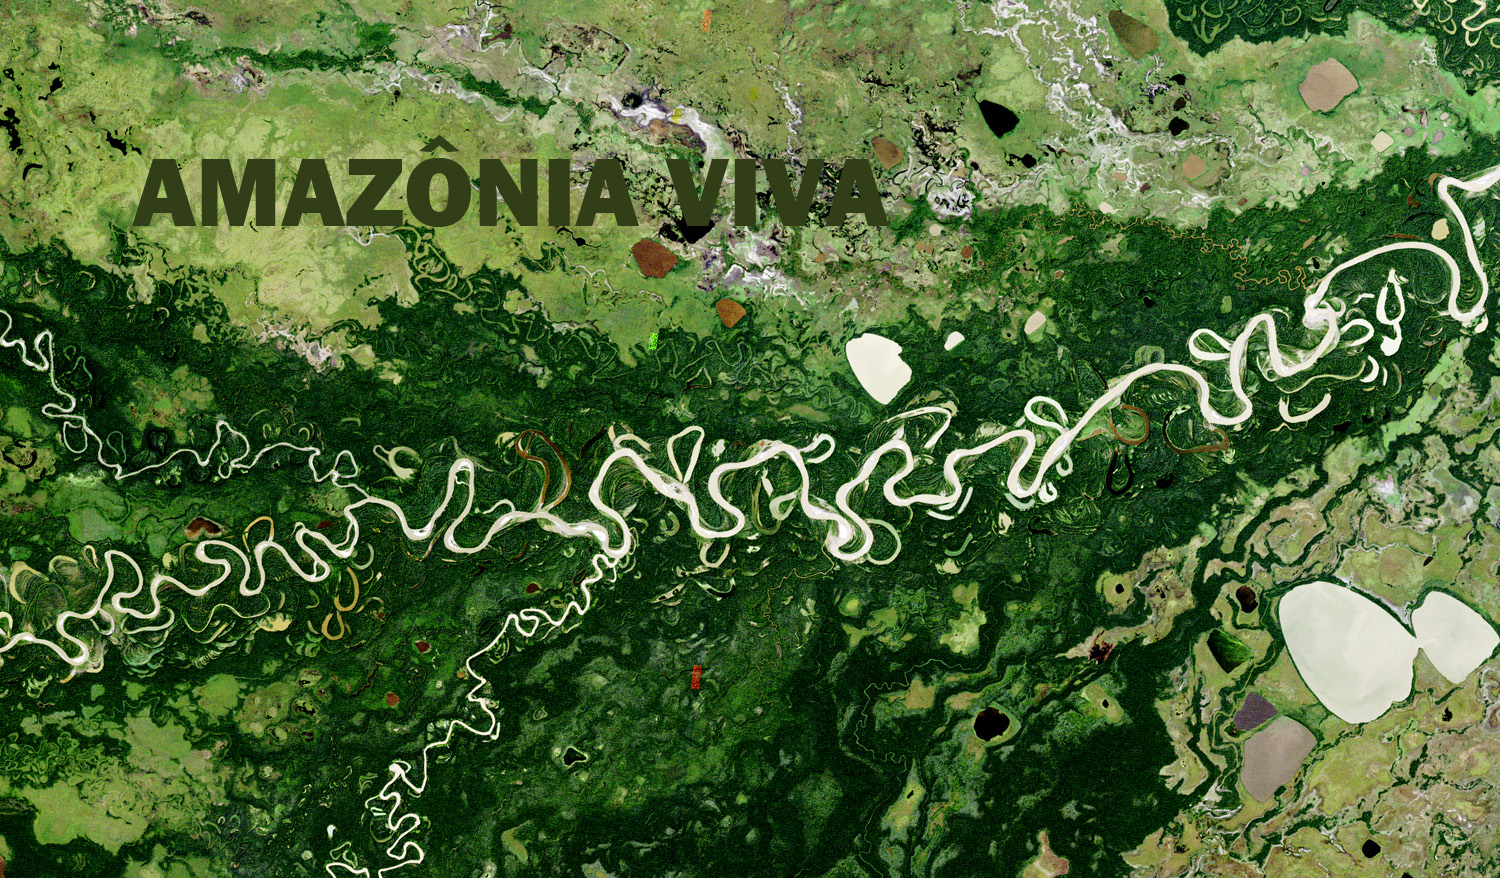 Pesquisa sobre conservação na Amazônia 7: fraqueza de parques e reservas